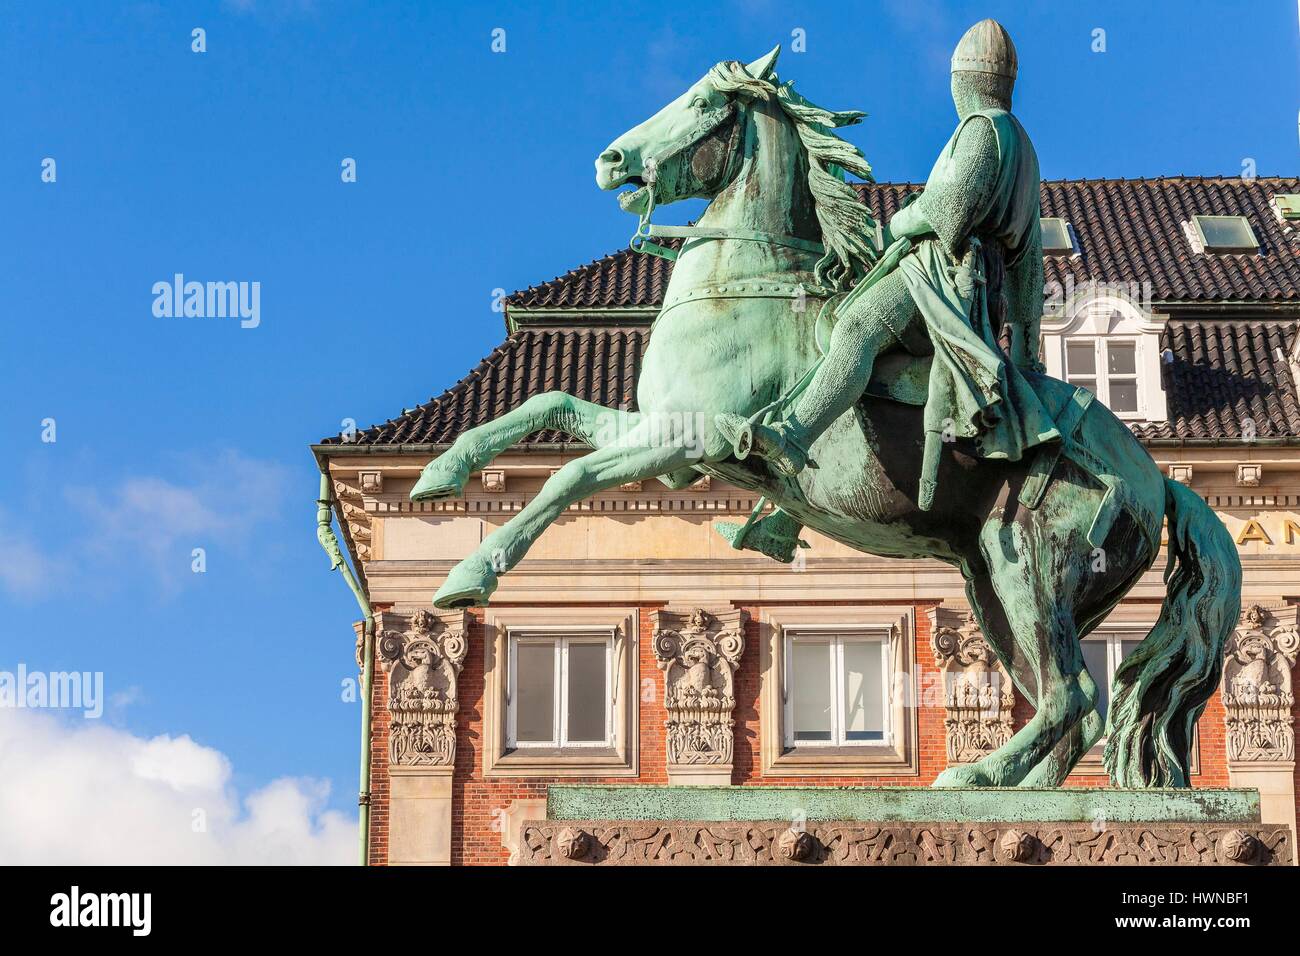 Le Danemark, la Nouvelle-Zélande, Copenhague, Hojbro Plads, statue équestre Absalon ou Axel (1128-1201) inauguré en 1901 Banque D'Images